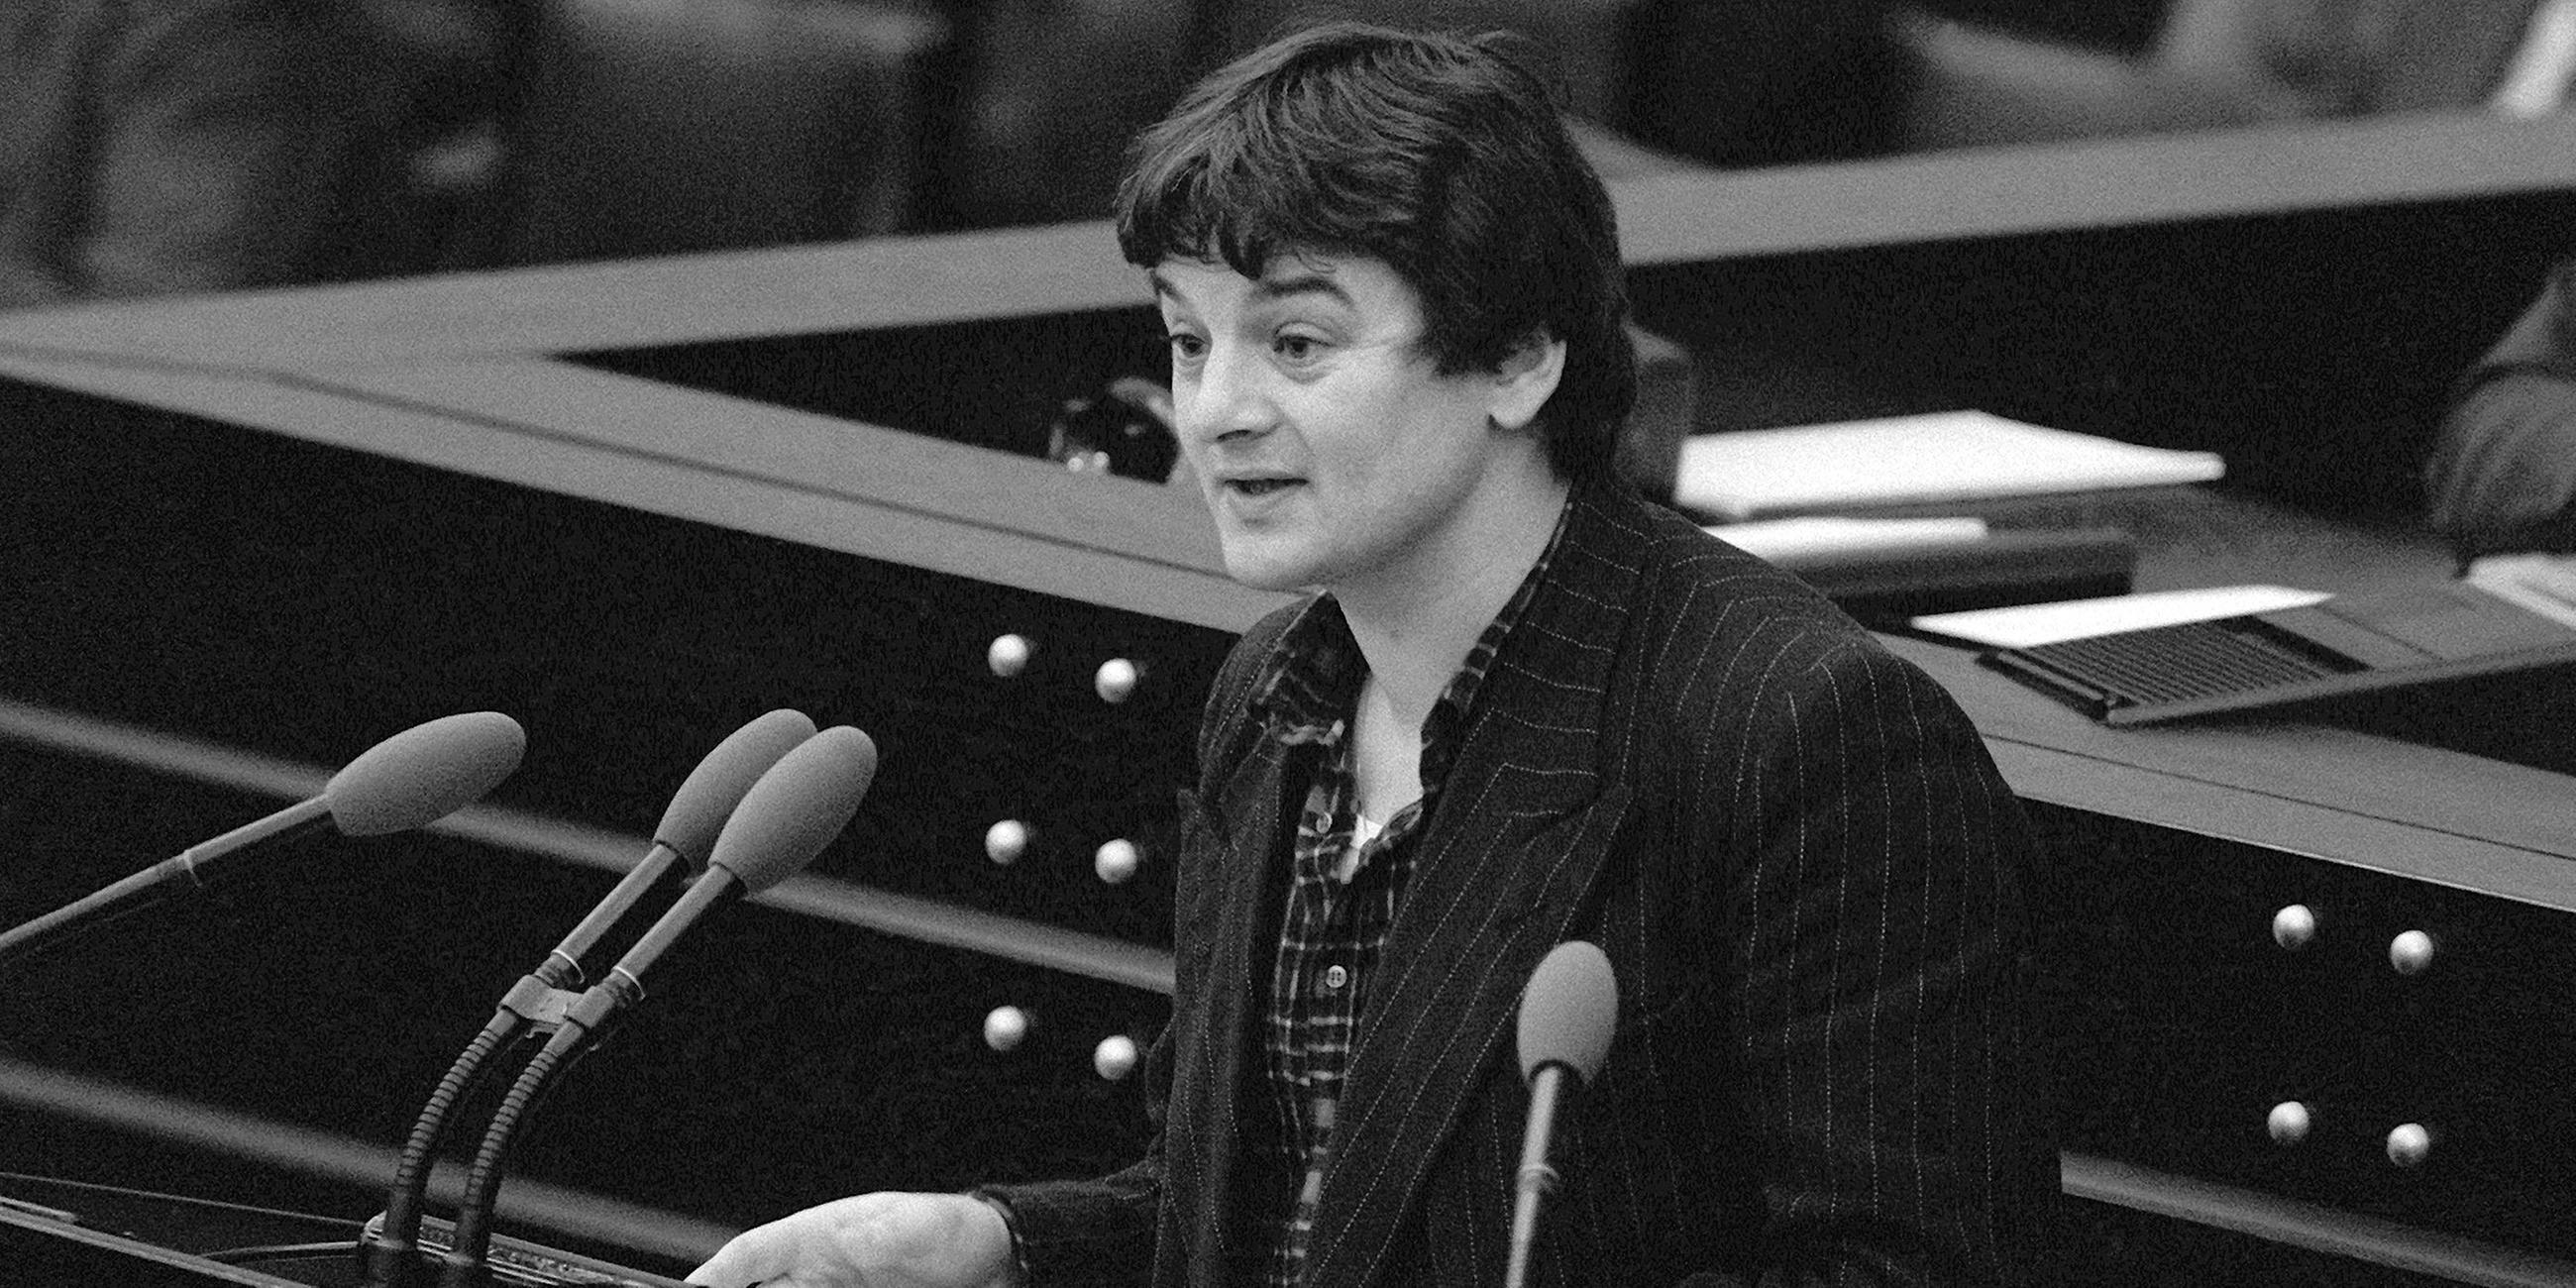 Bundestag - Bonn 1984: Joschka Fischer